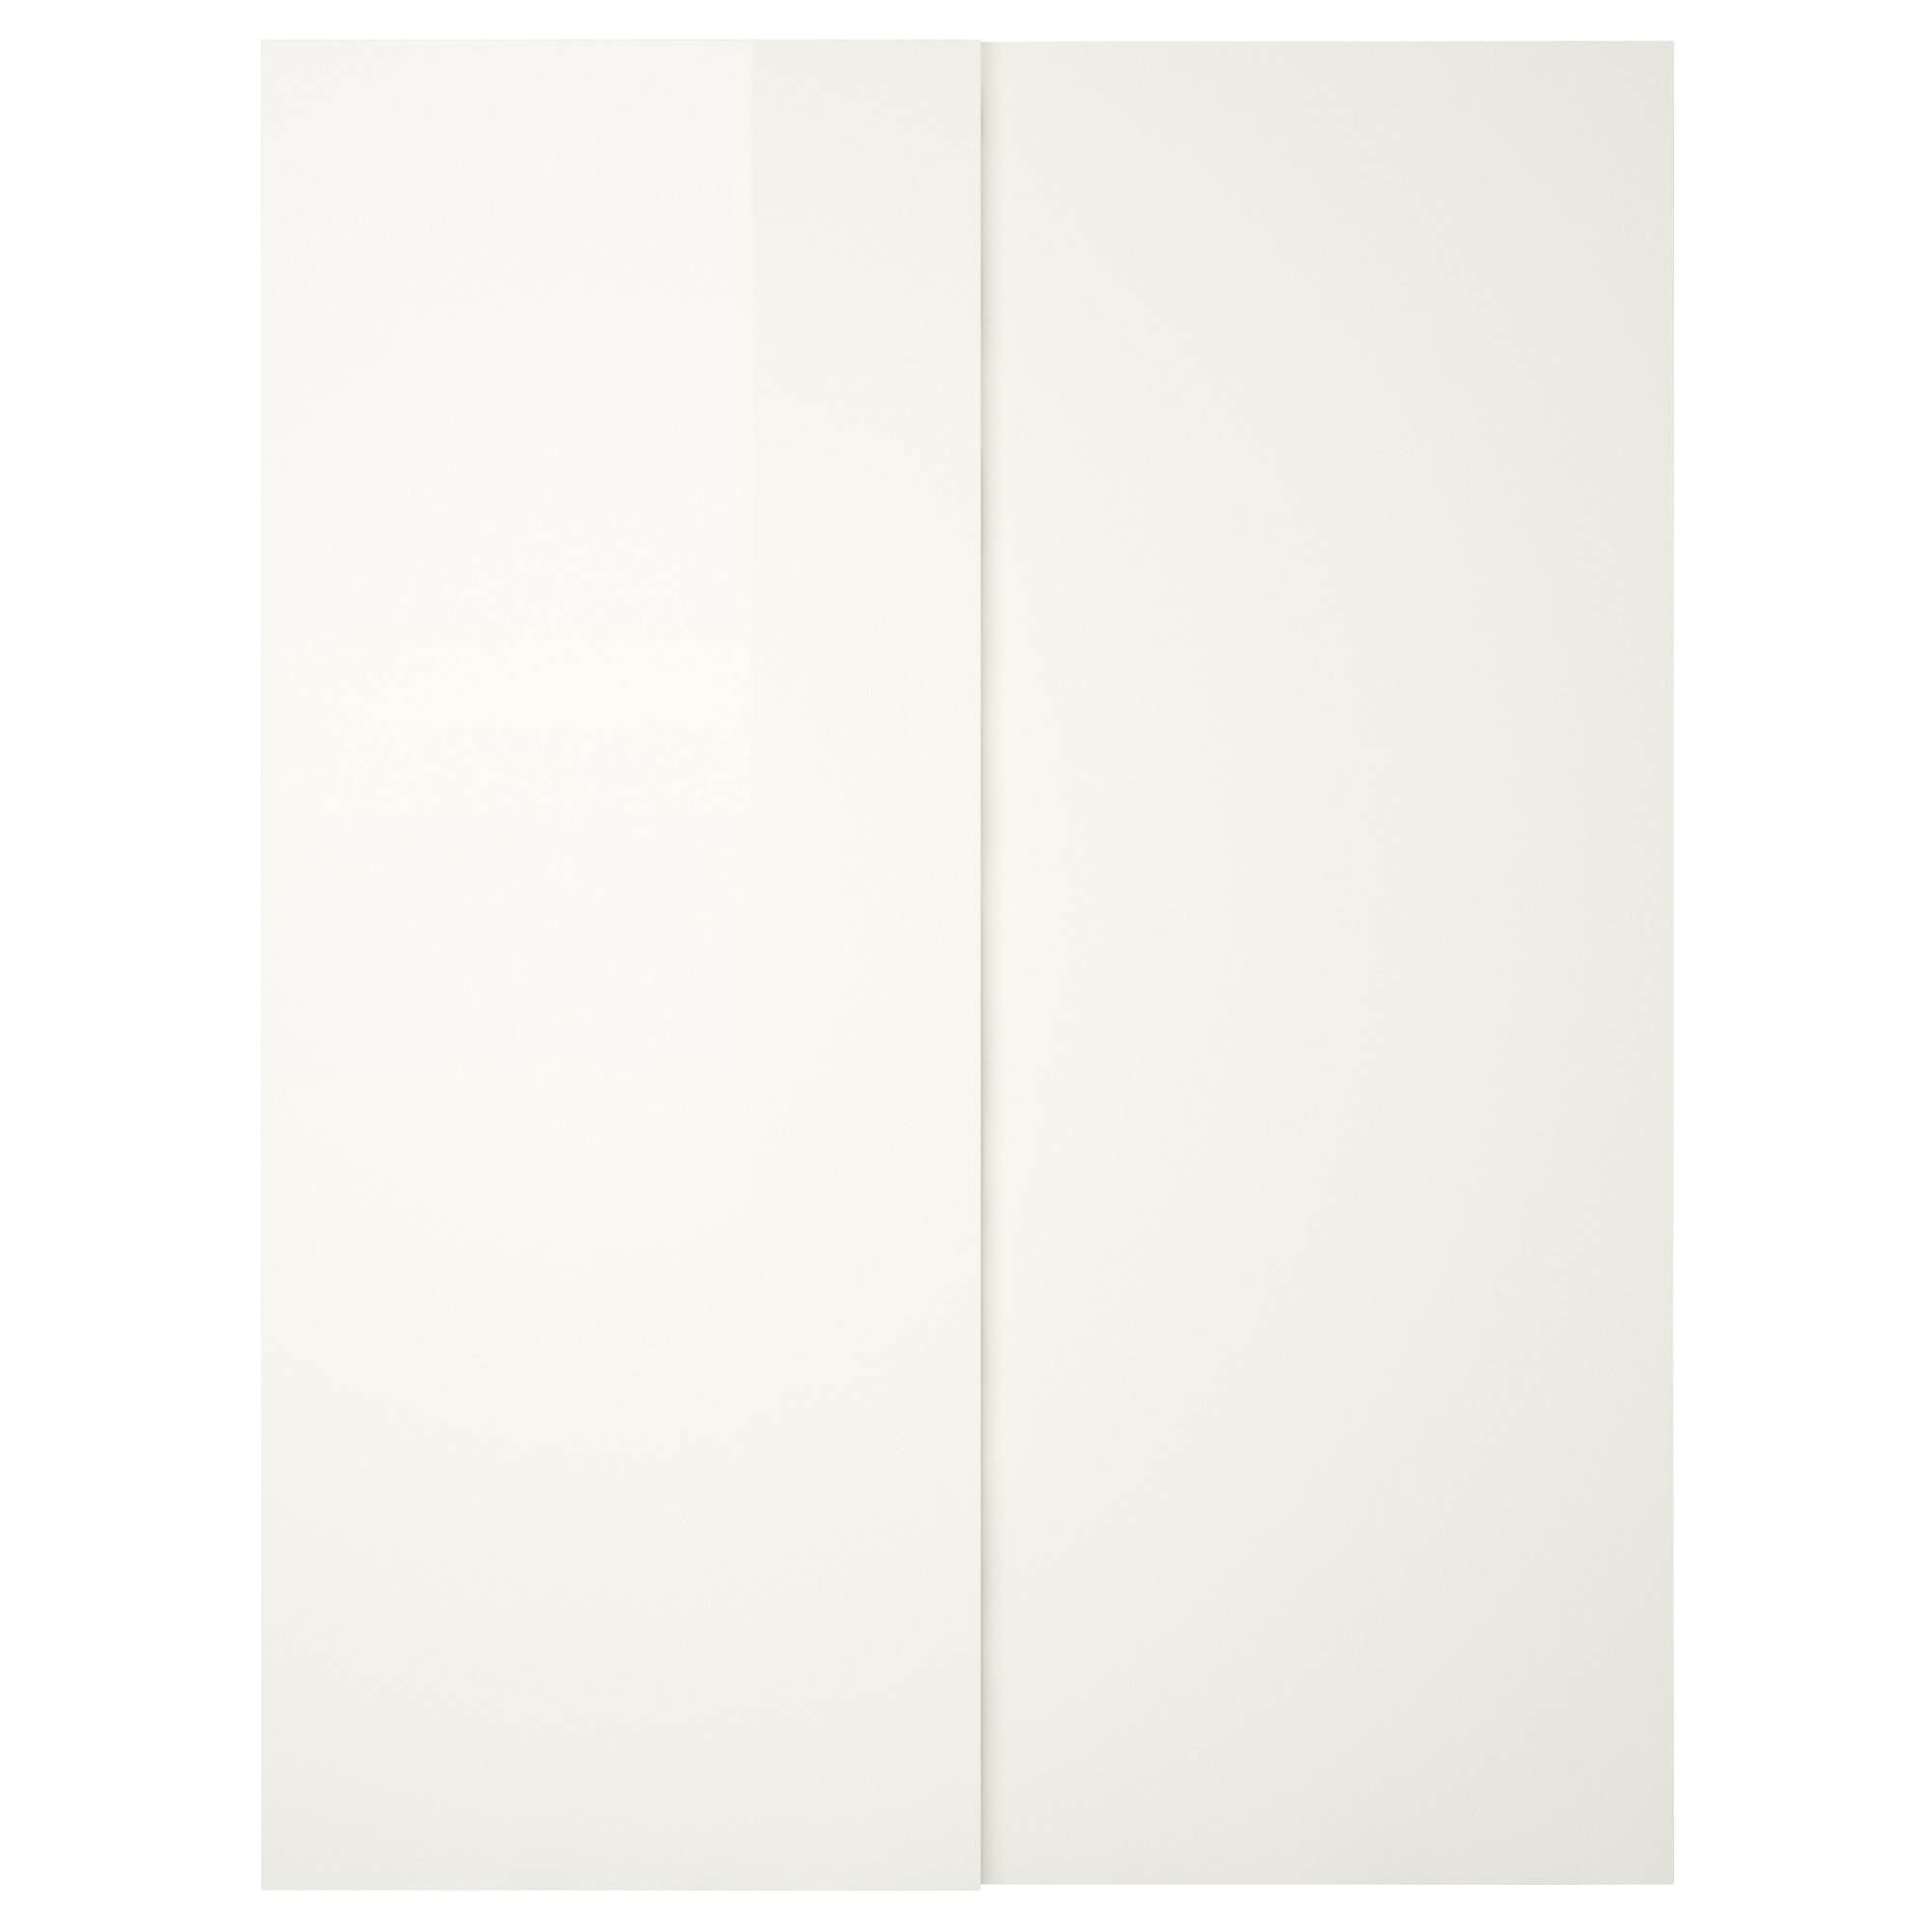 Hasvik Pair Of Sliding Doors High Gloss/white 150x201 Cm – Ikea Within White High Gloss Sliding Wardrobes (View 8 of 15)